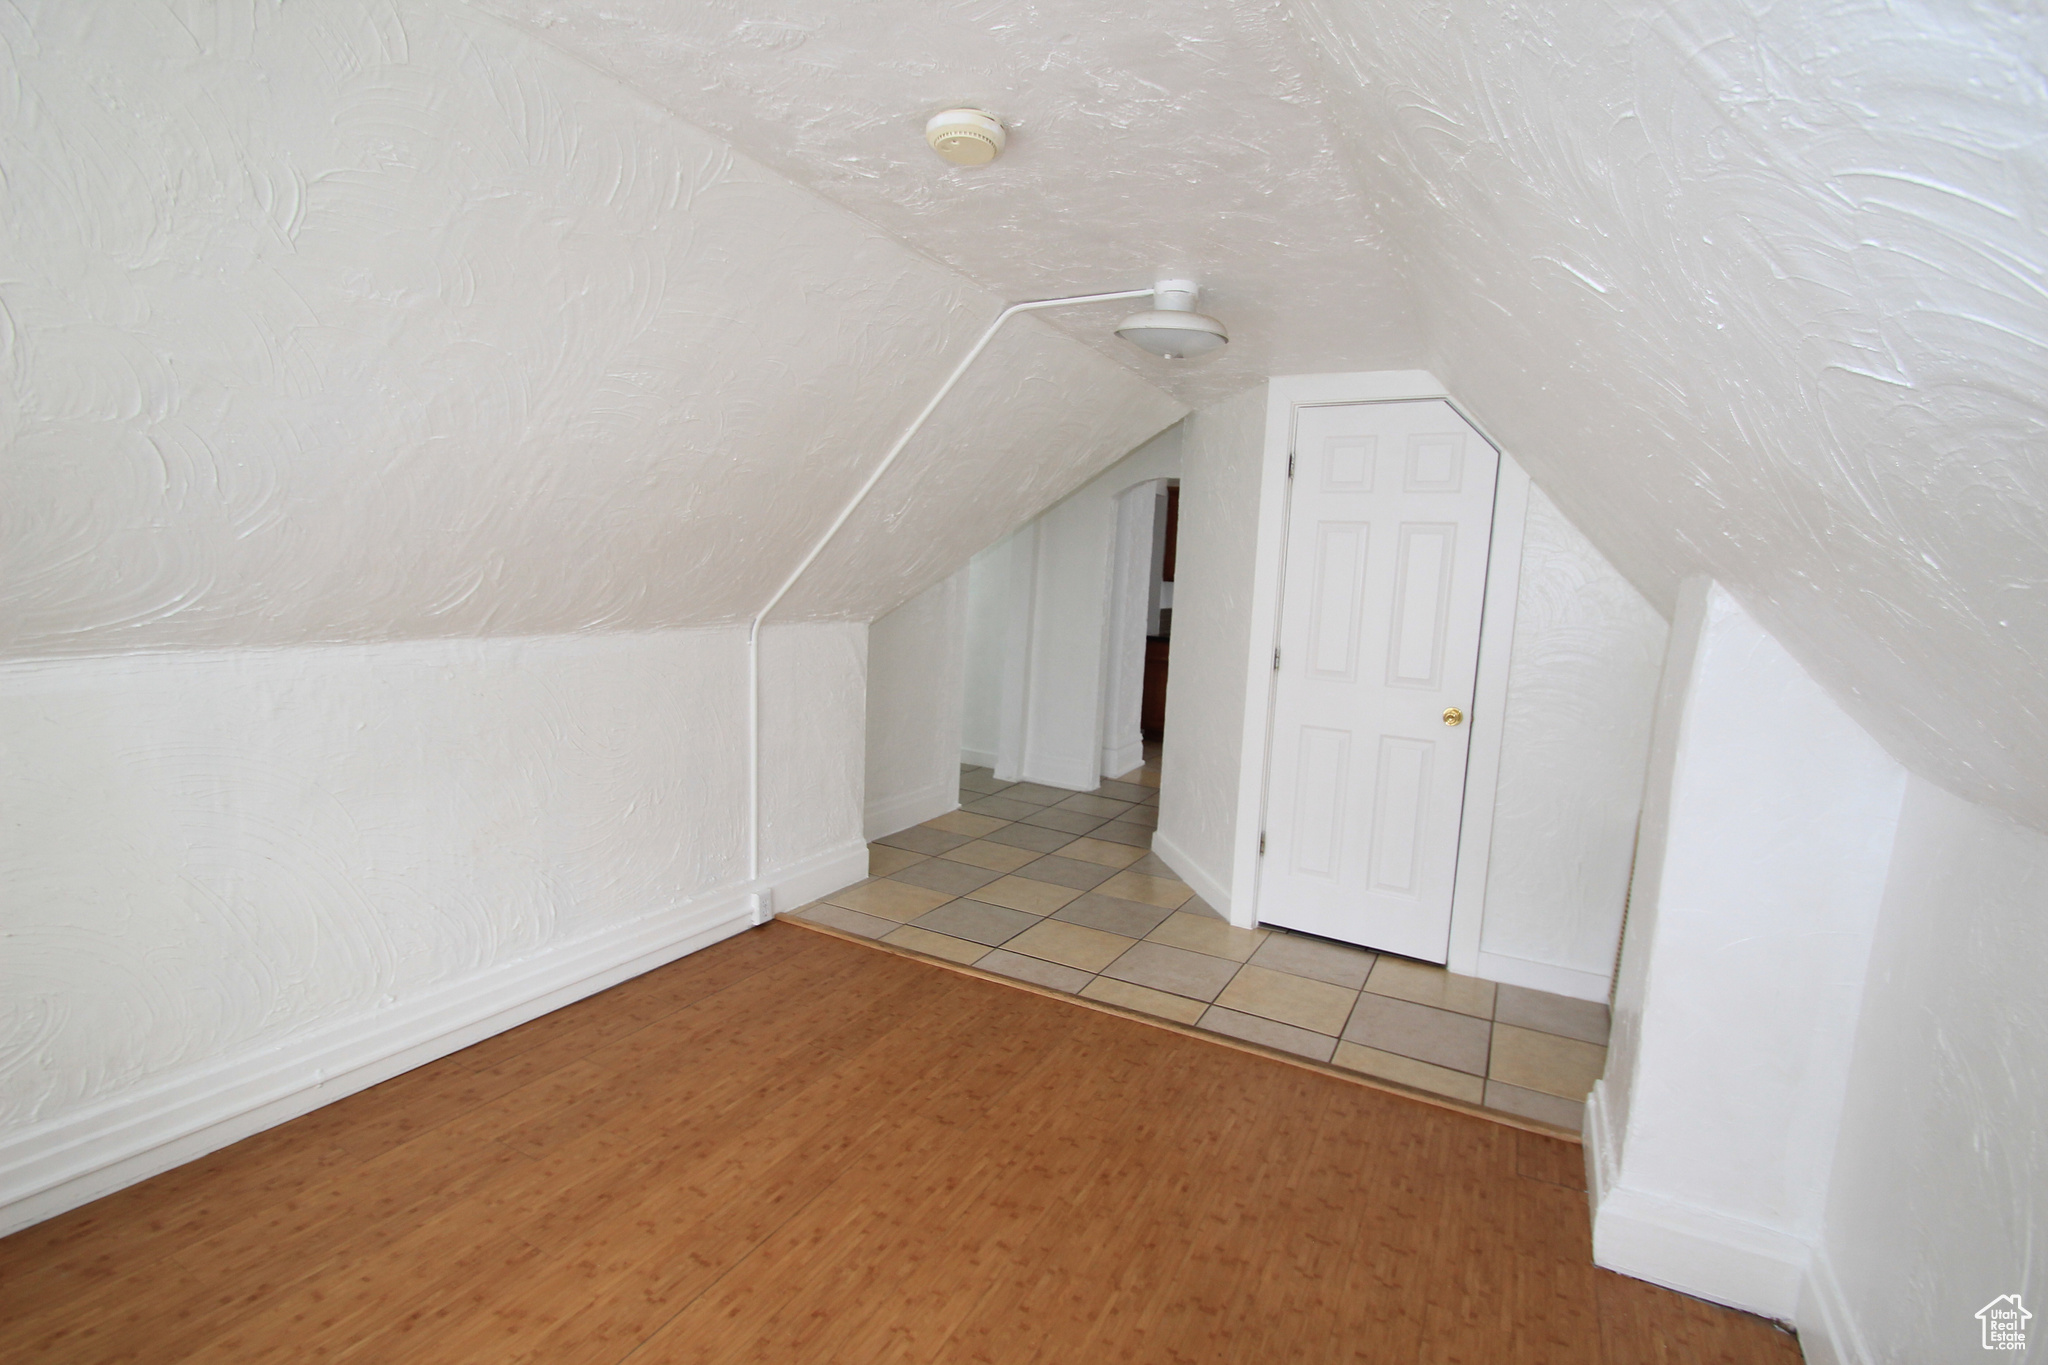 Bonus room featuring lofted ceiling and light hardwood / wood-style flooring